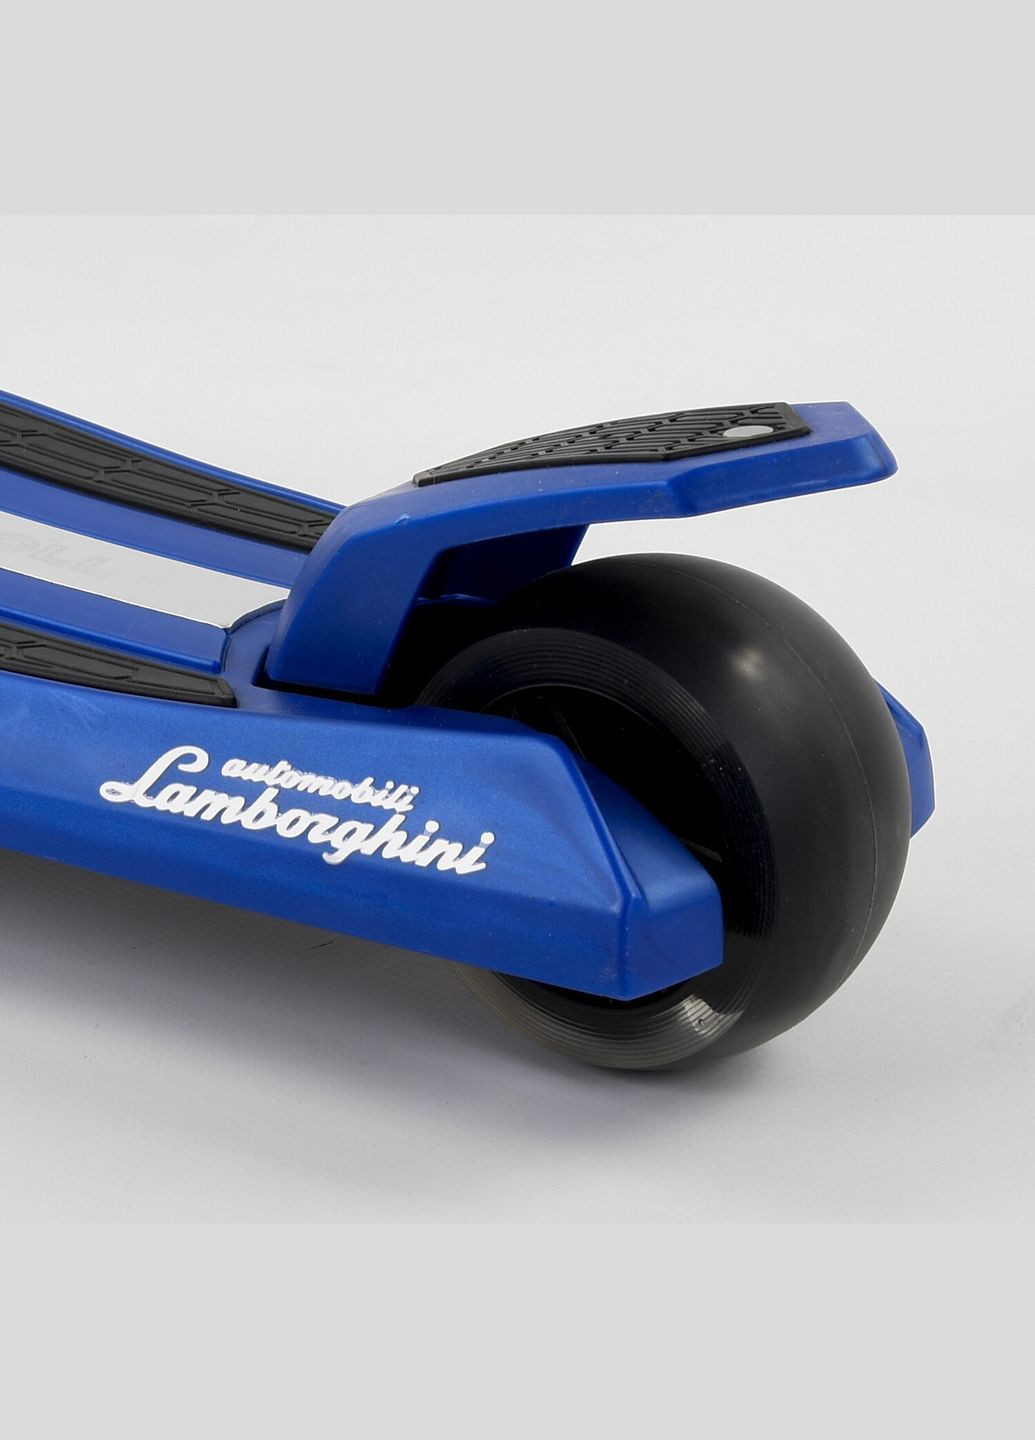 Дитячий самокат LB - 20300. Складане алюмінієве кермо, 3 PU колеса з підсвічуванням. Синій Lamborghini (291409969)